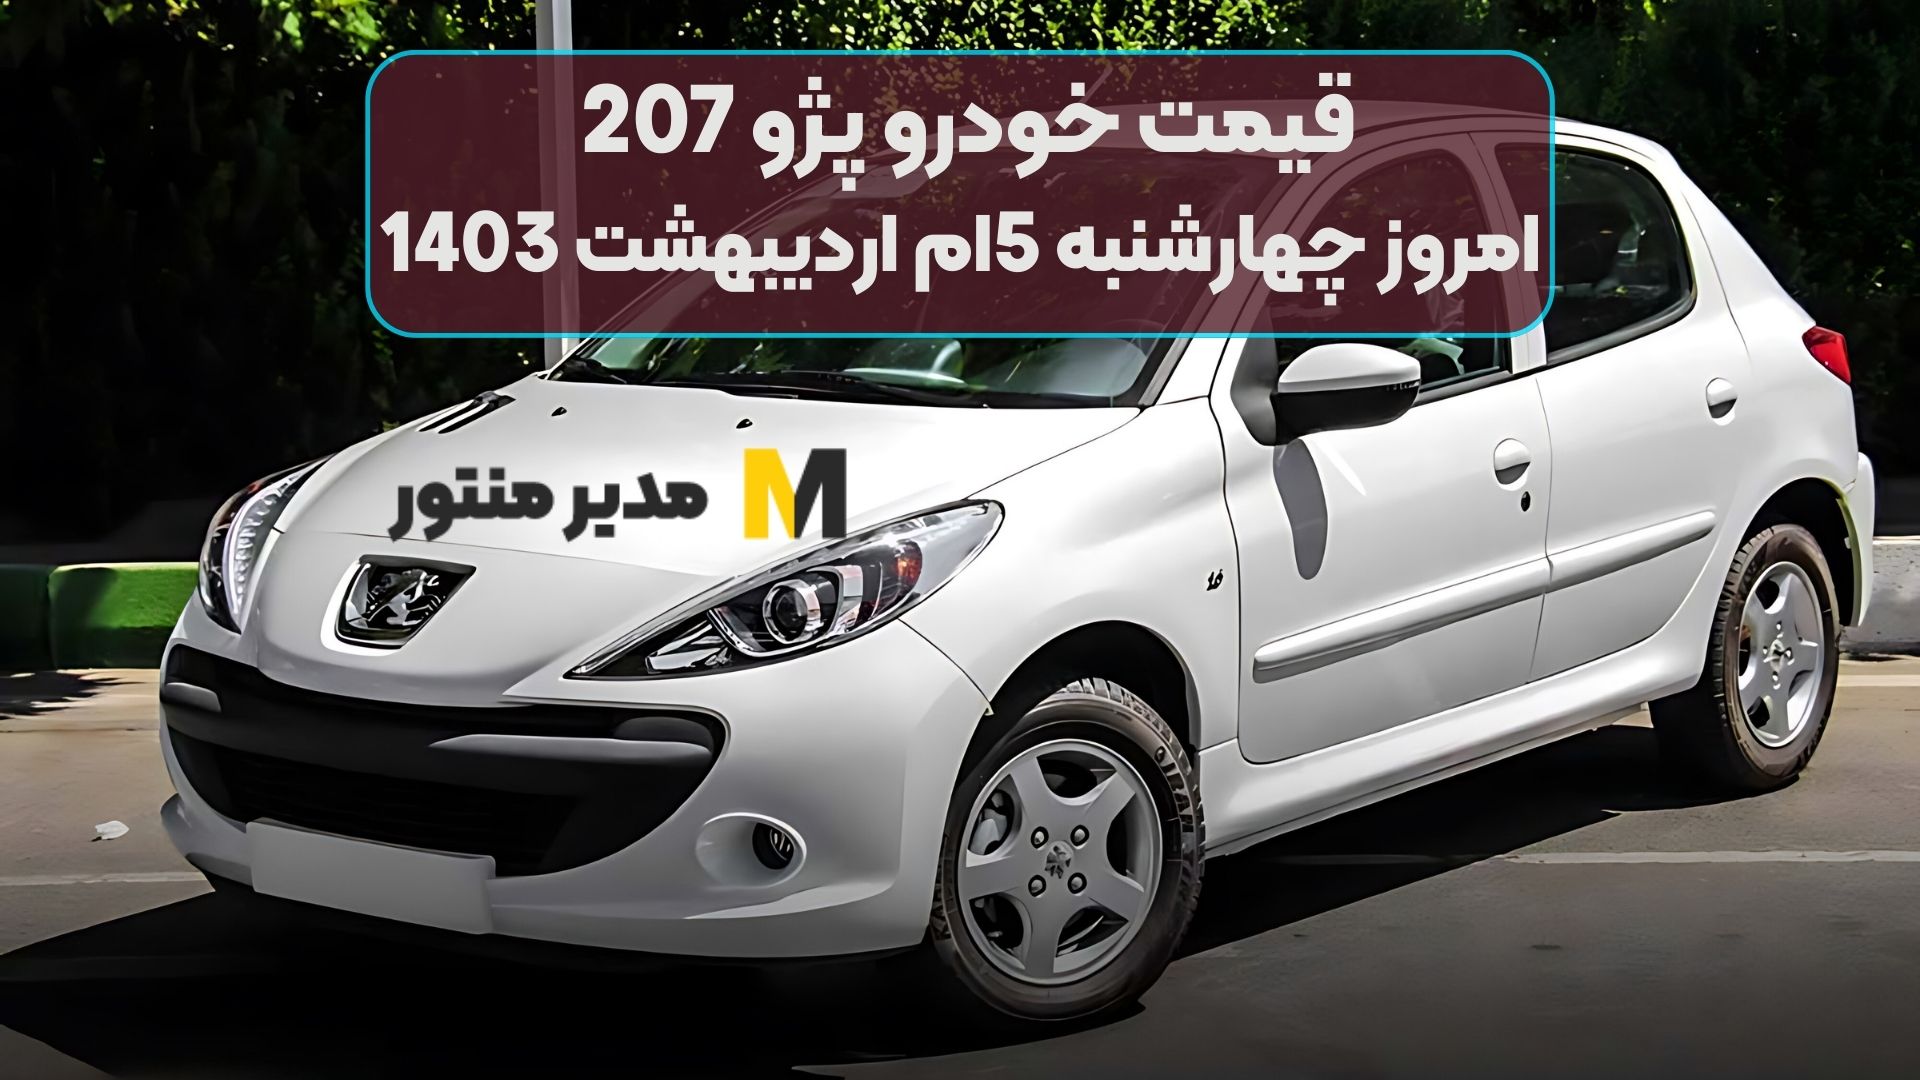 قیمت خودرو پژو 207 امروز چهارشنبه 5ام اردیبهشت 1403